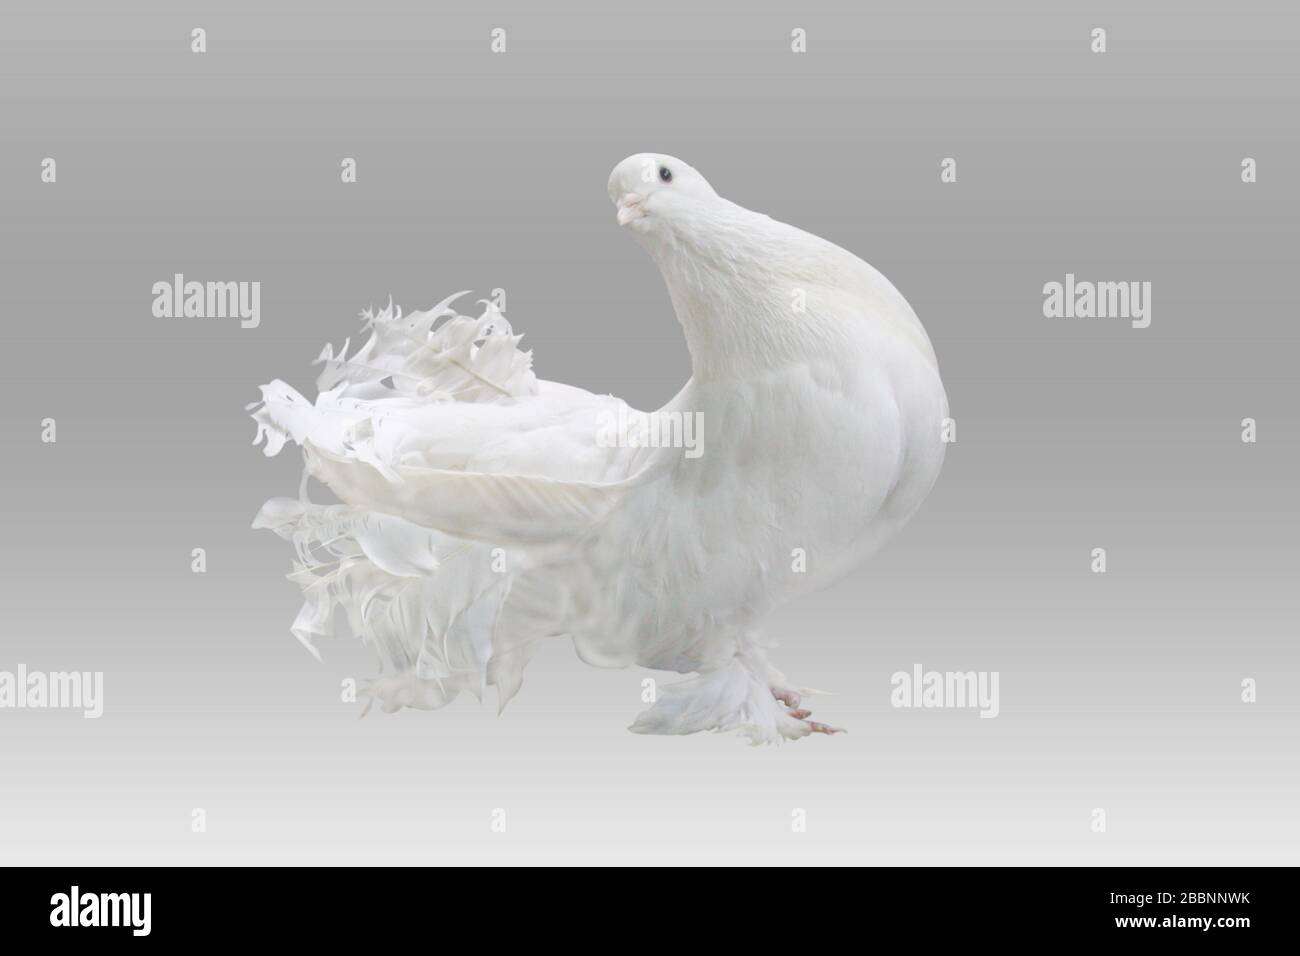 Lokkha Pigeon, diese Taube ist ruhig. Tauben gelten als Symbol des Friedens. Lokkha-Taube vor weißem Hintergrund. Stockfoto